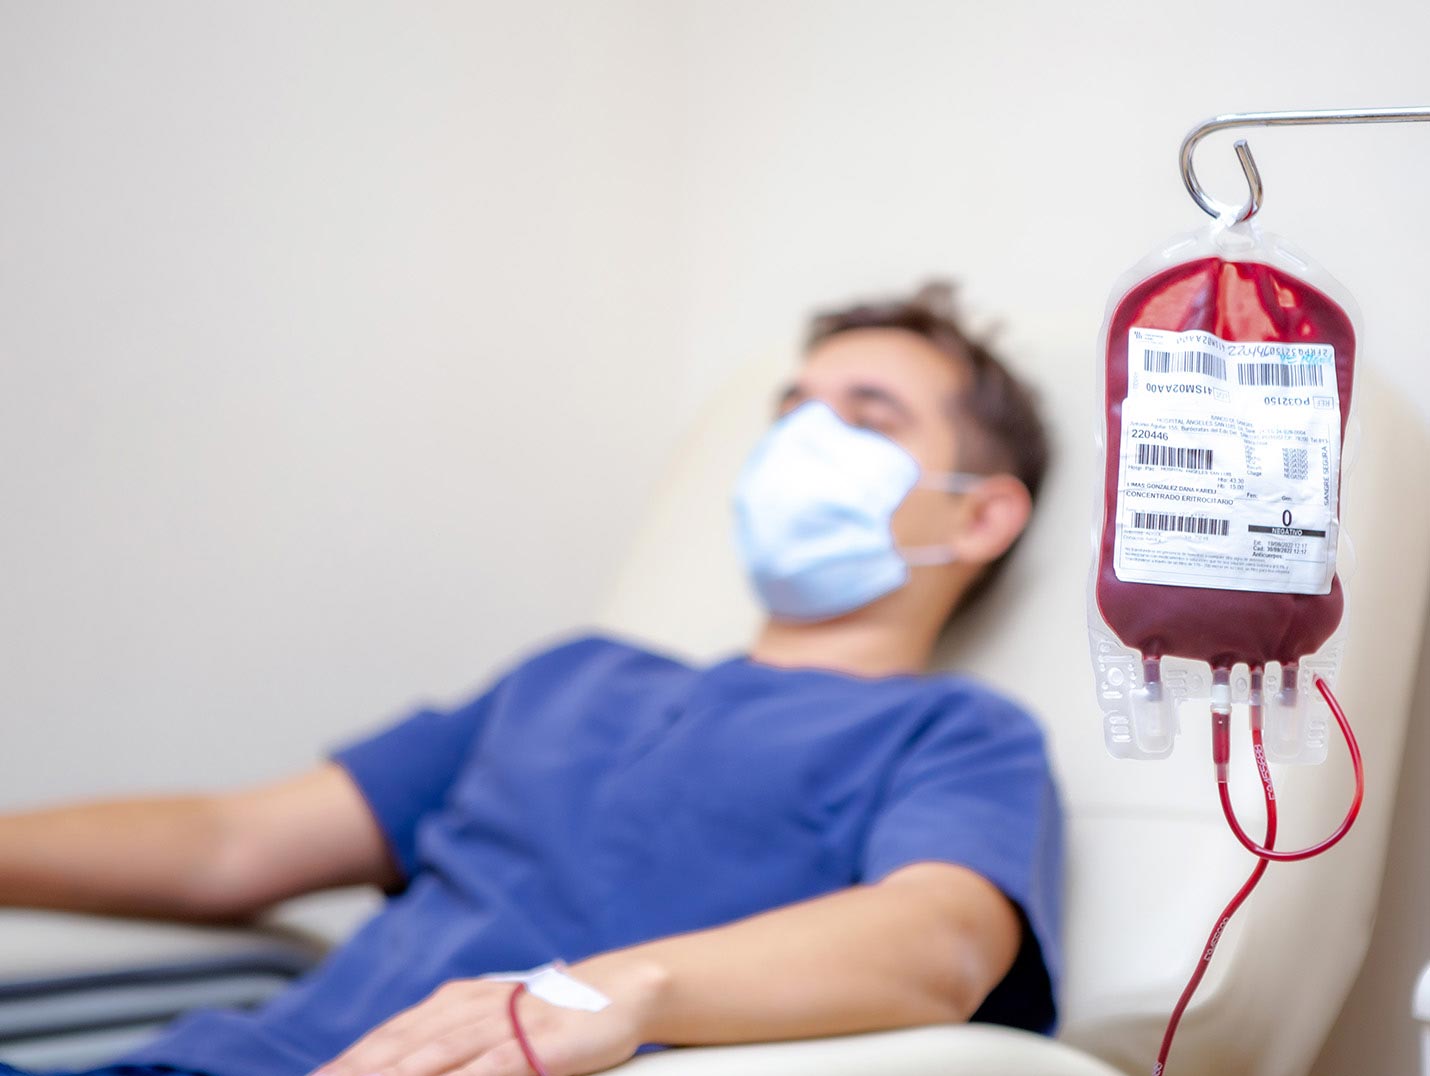 Paciente recostado sobre un sillón donando sangre y a su lado una bolsa de transfusión sanguínea en un porta suero.